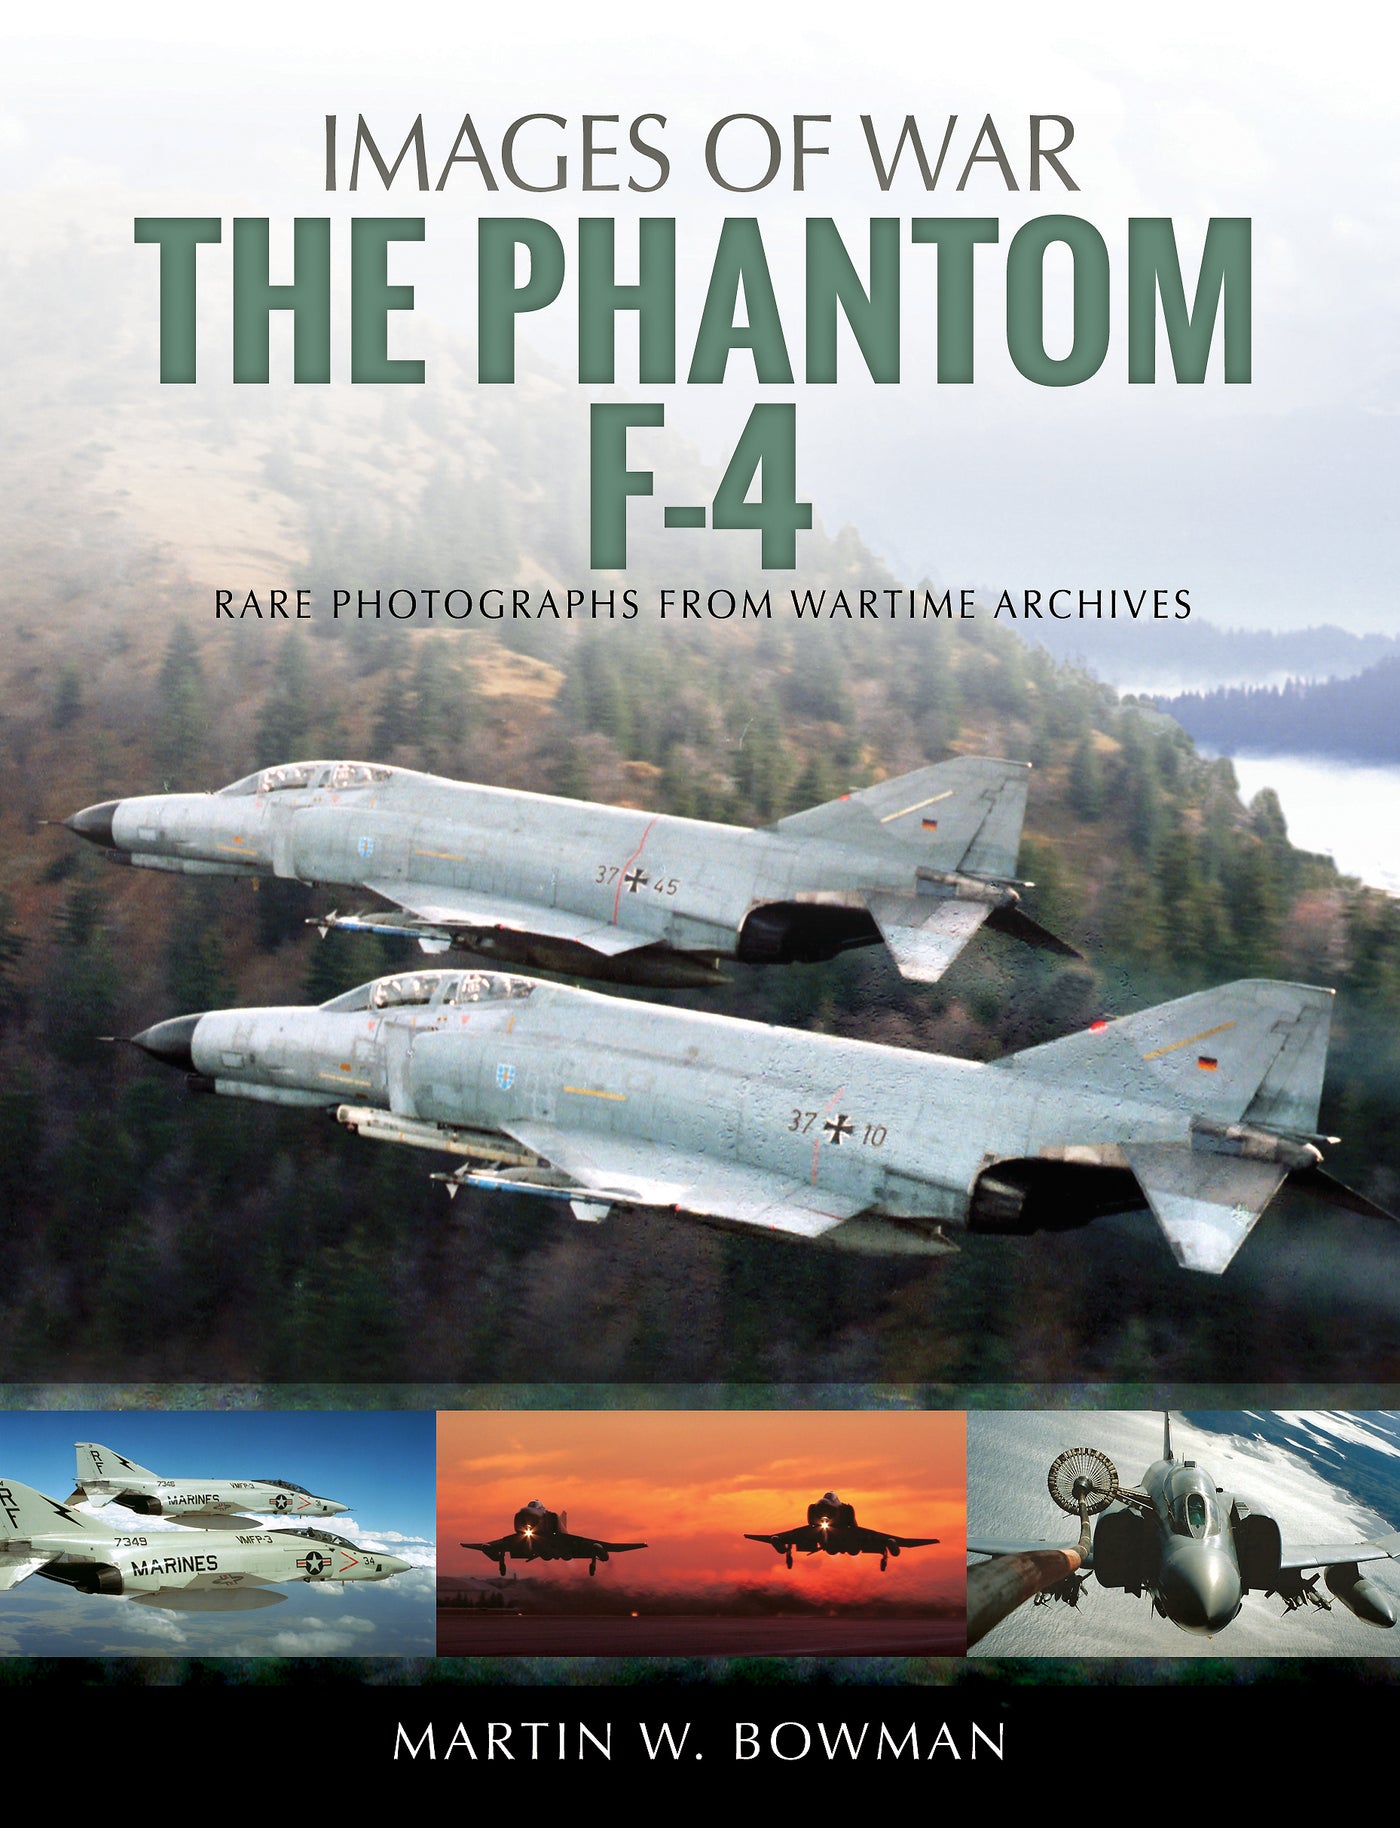 Die Phantom F-4 